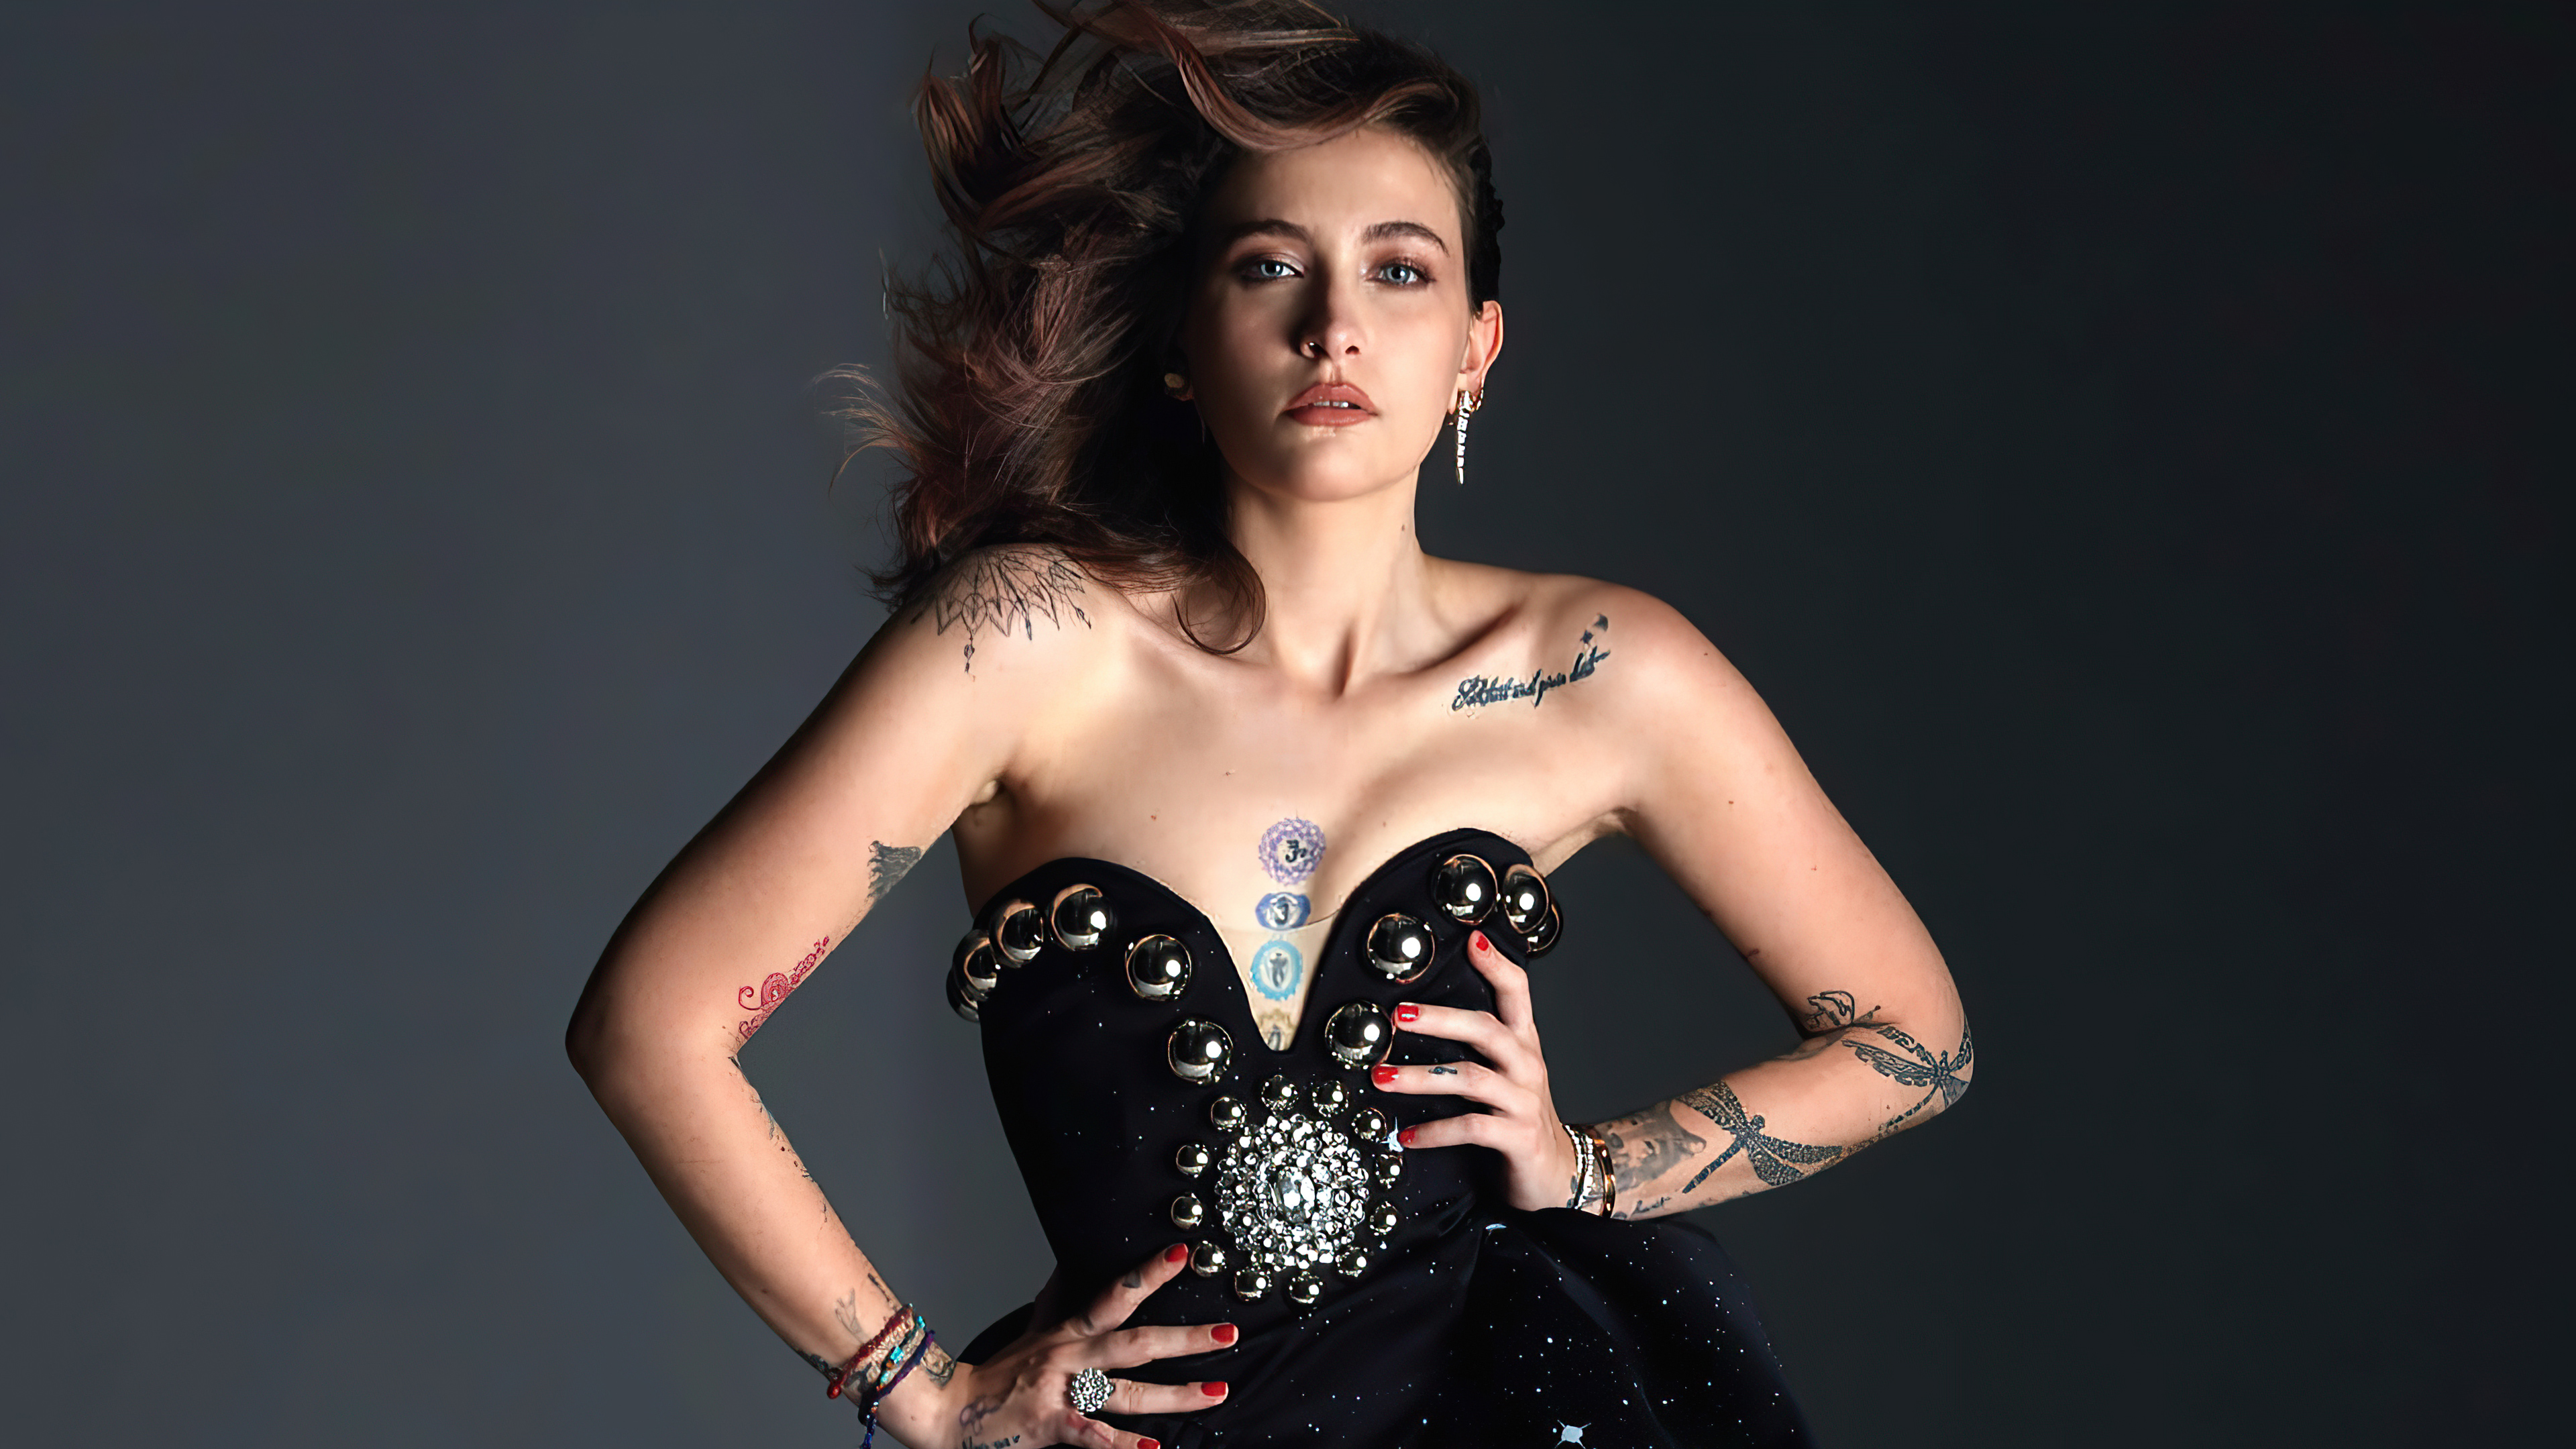 Бесплатное фото Пэрис джексон в черном платье с татуировками на теле